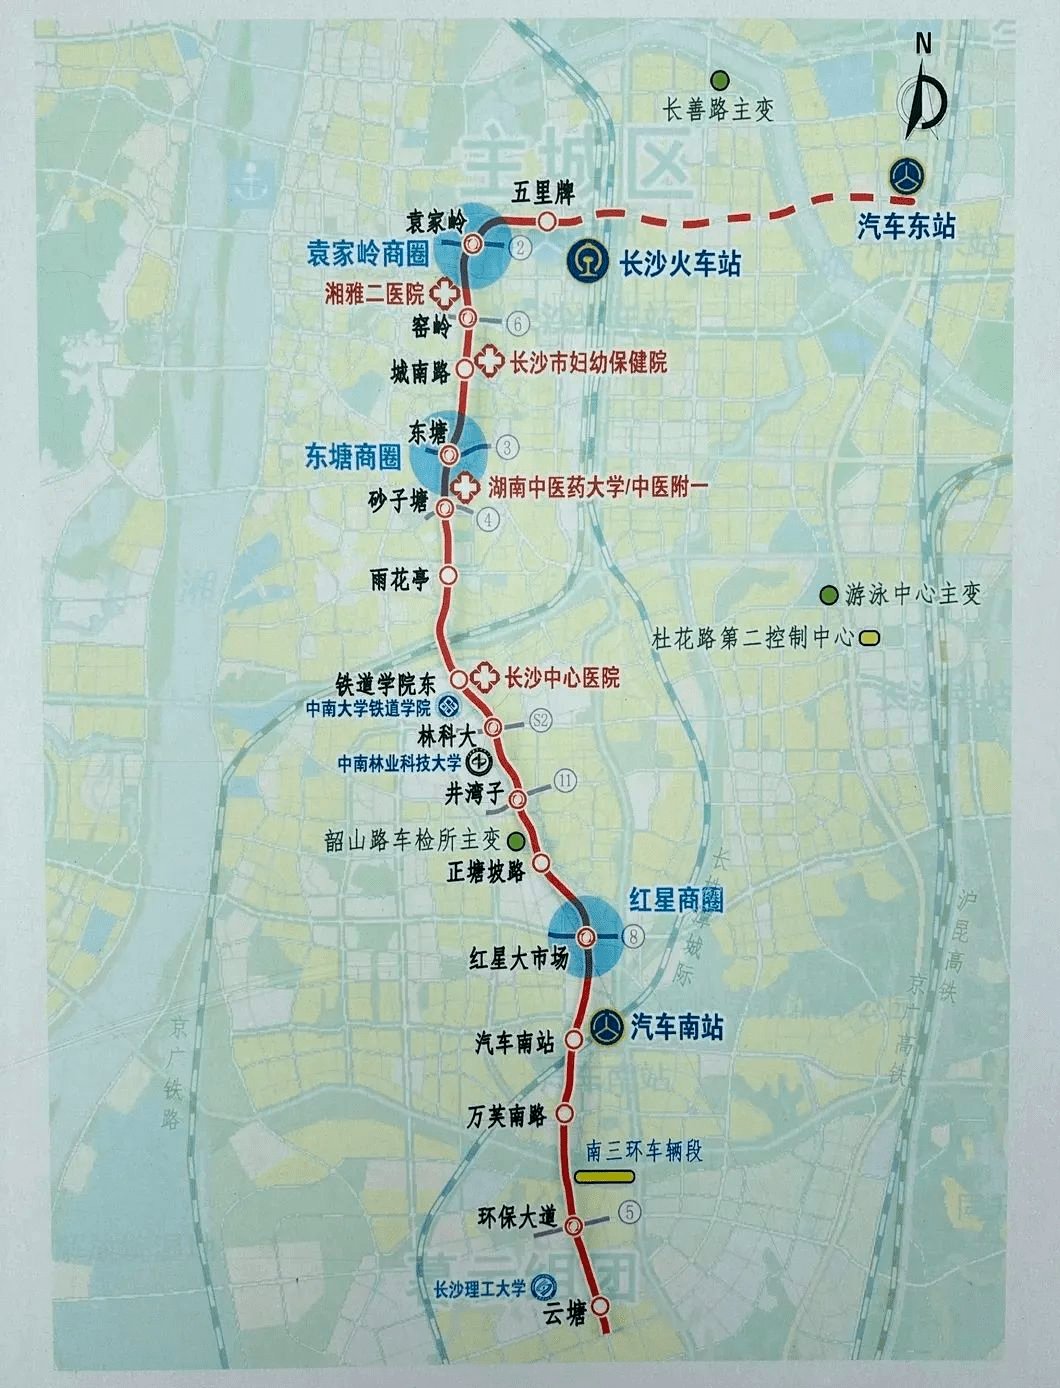 七号地铁站线路图图片